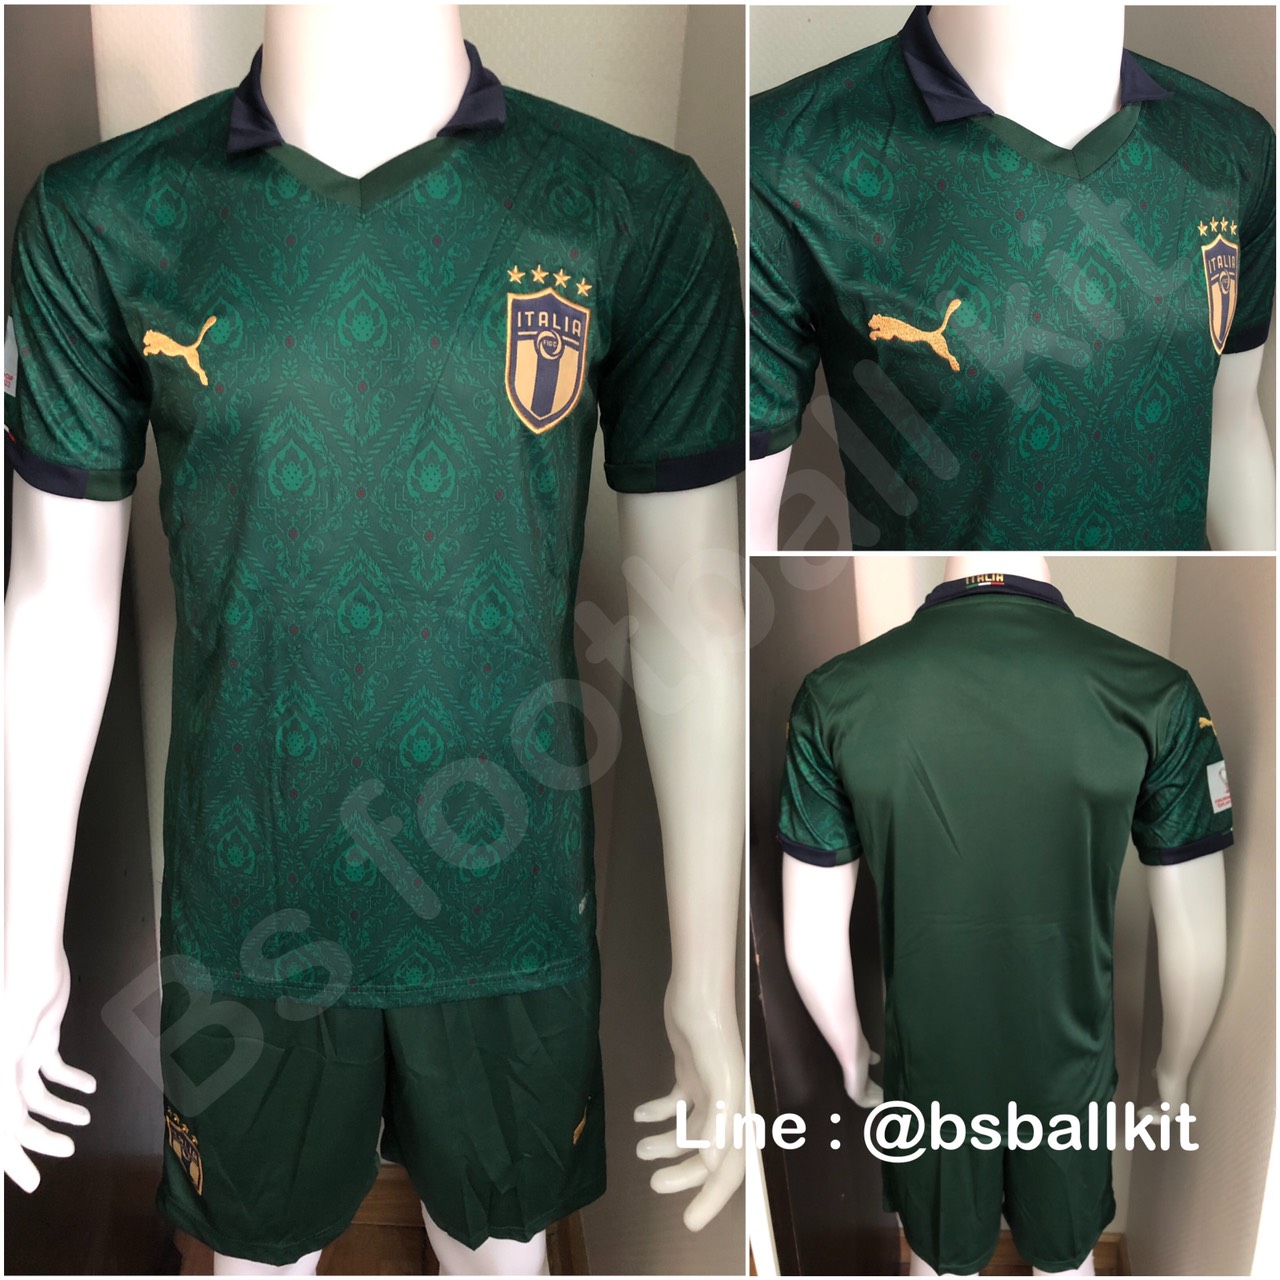 ชุดฟุตบอลทีมชาติ อิตาลี 2020 มี3แบบ (ได้ทั้งเสื้อและกางเกง)